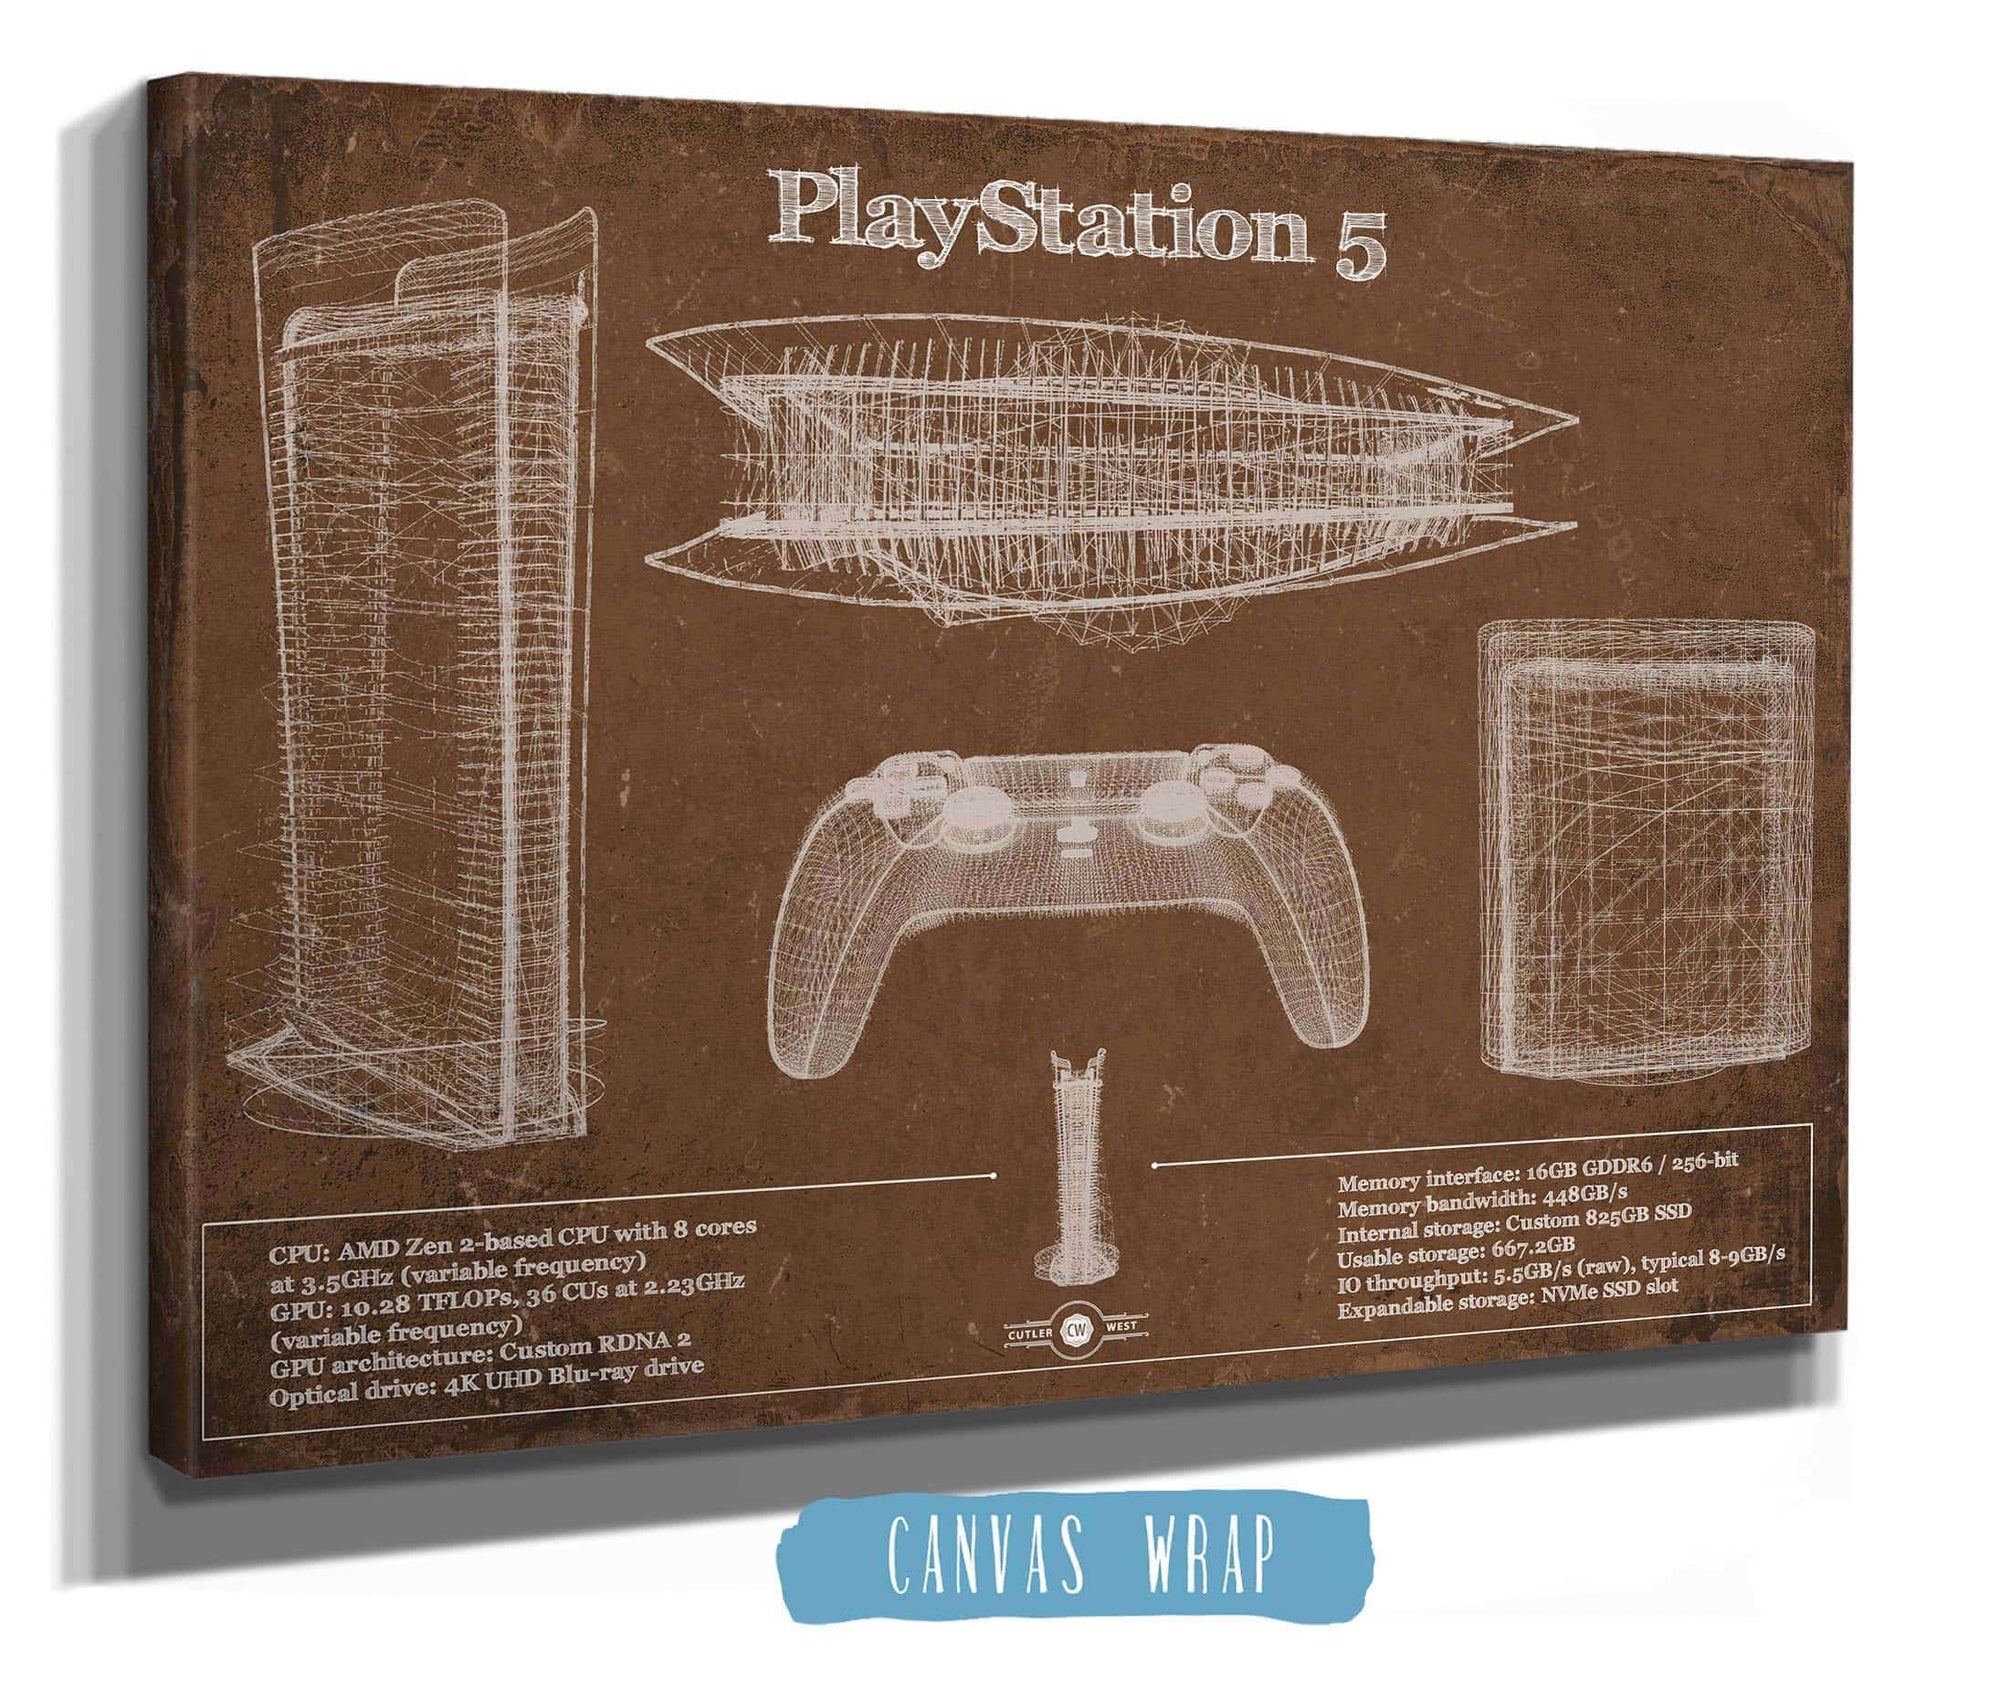 Afskedige kaldenavn tunge Playstation 5 Blueprint Original Wall Art